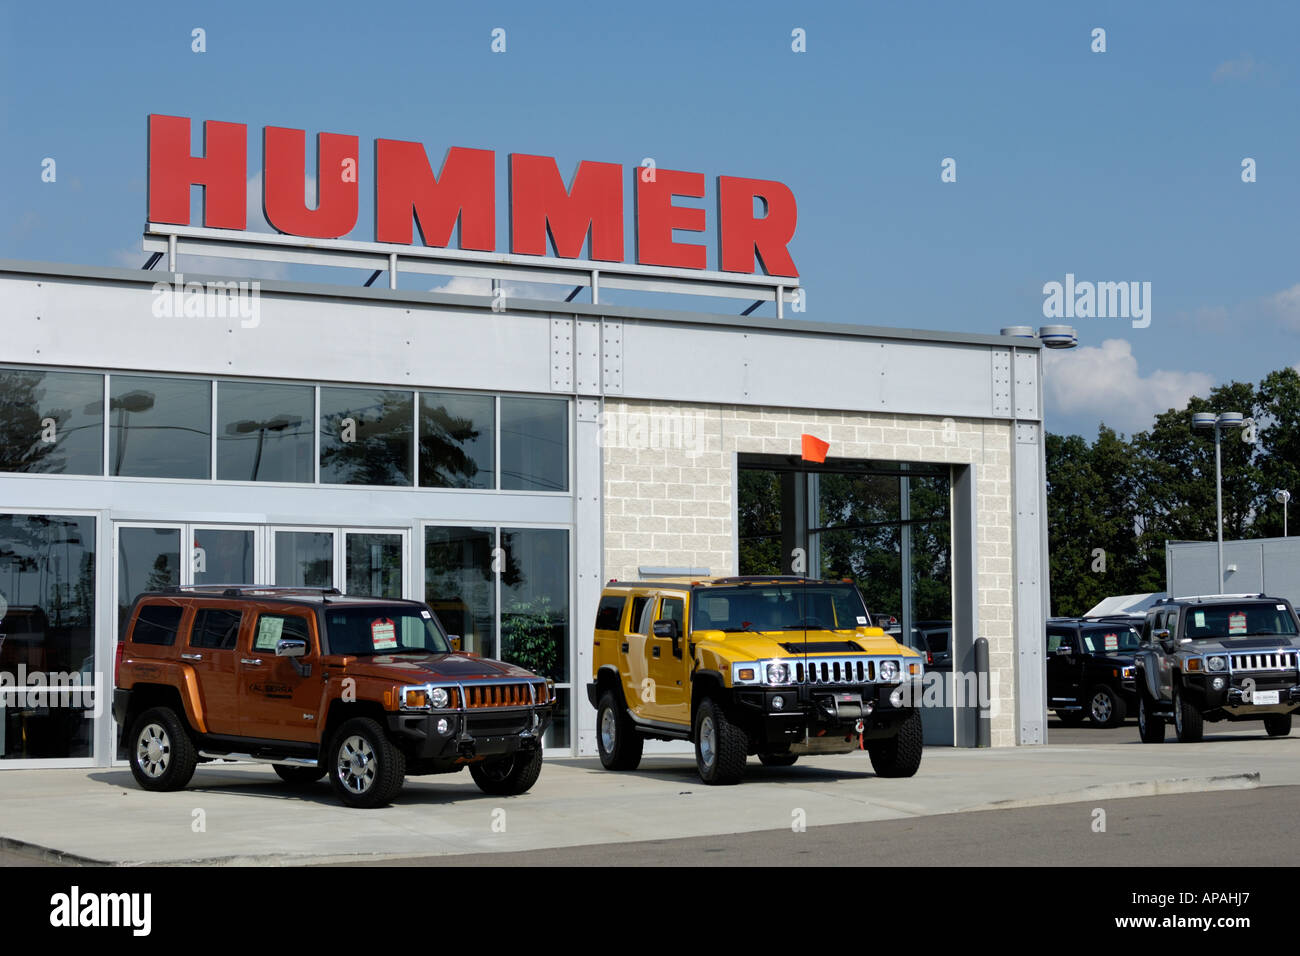 Hummer 3 immagini e fotografie stock ad alta risoluzione - Alamy